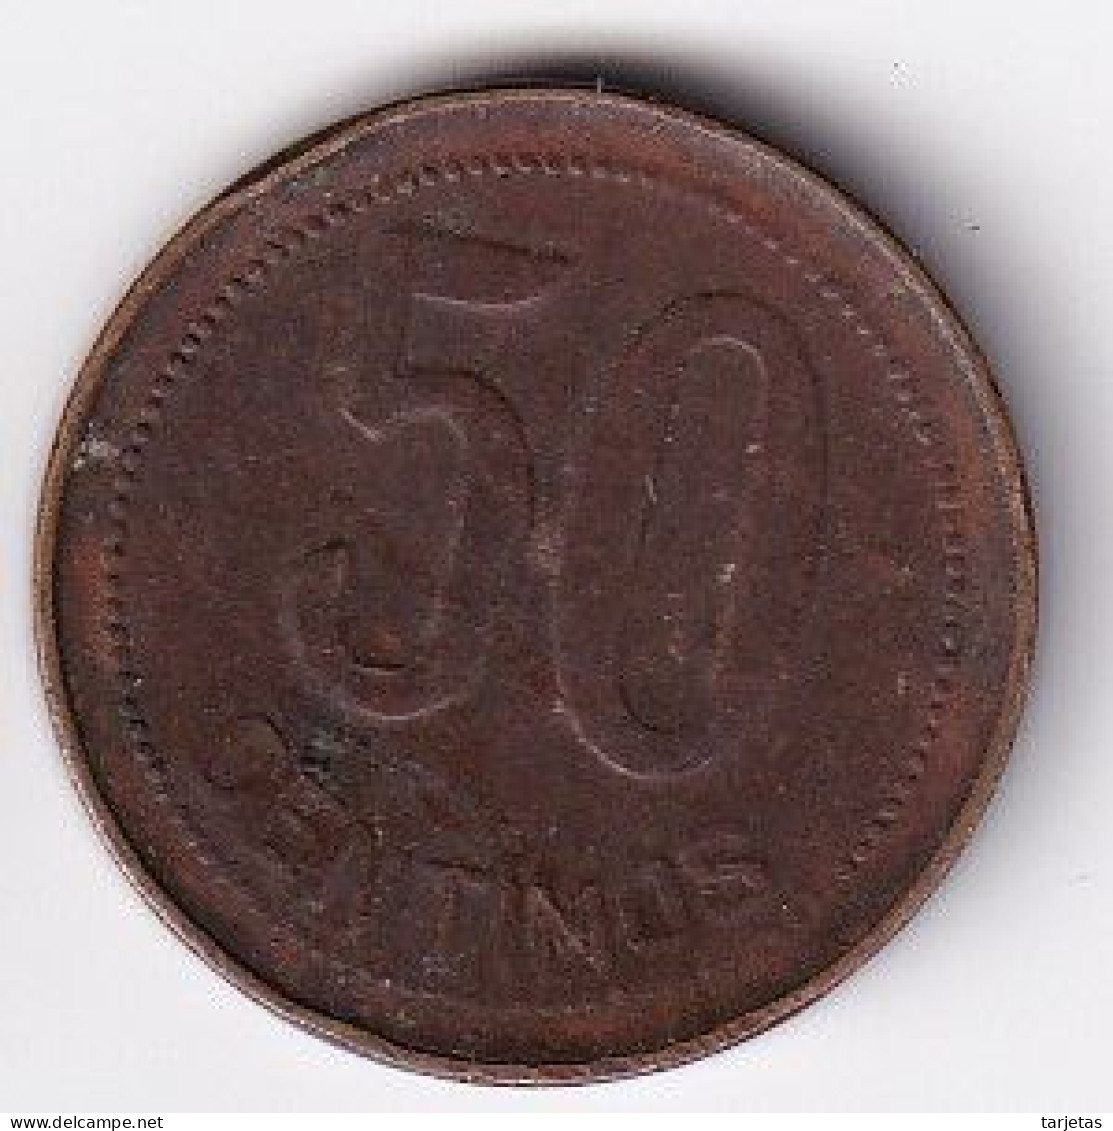 MONEDA DE ESPAÑA DE 50 CENTIMOS DEL AÑO 1937 (COIN) REPUBLICA ESPAÑOLA - 50 Centiemos